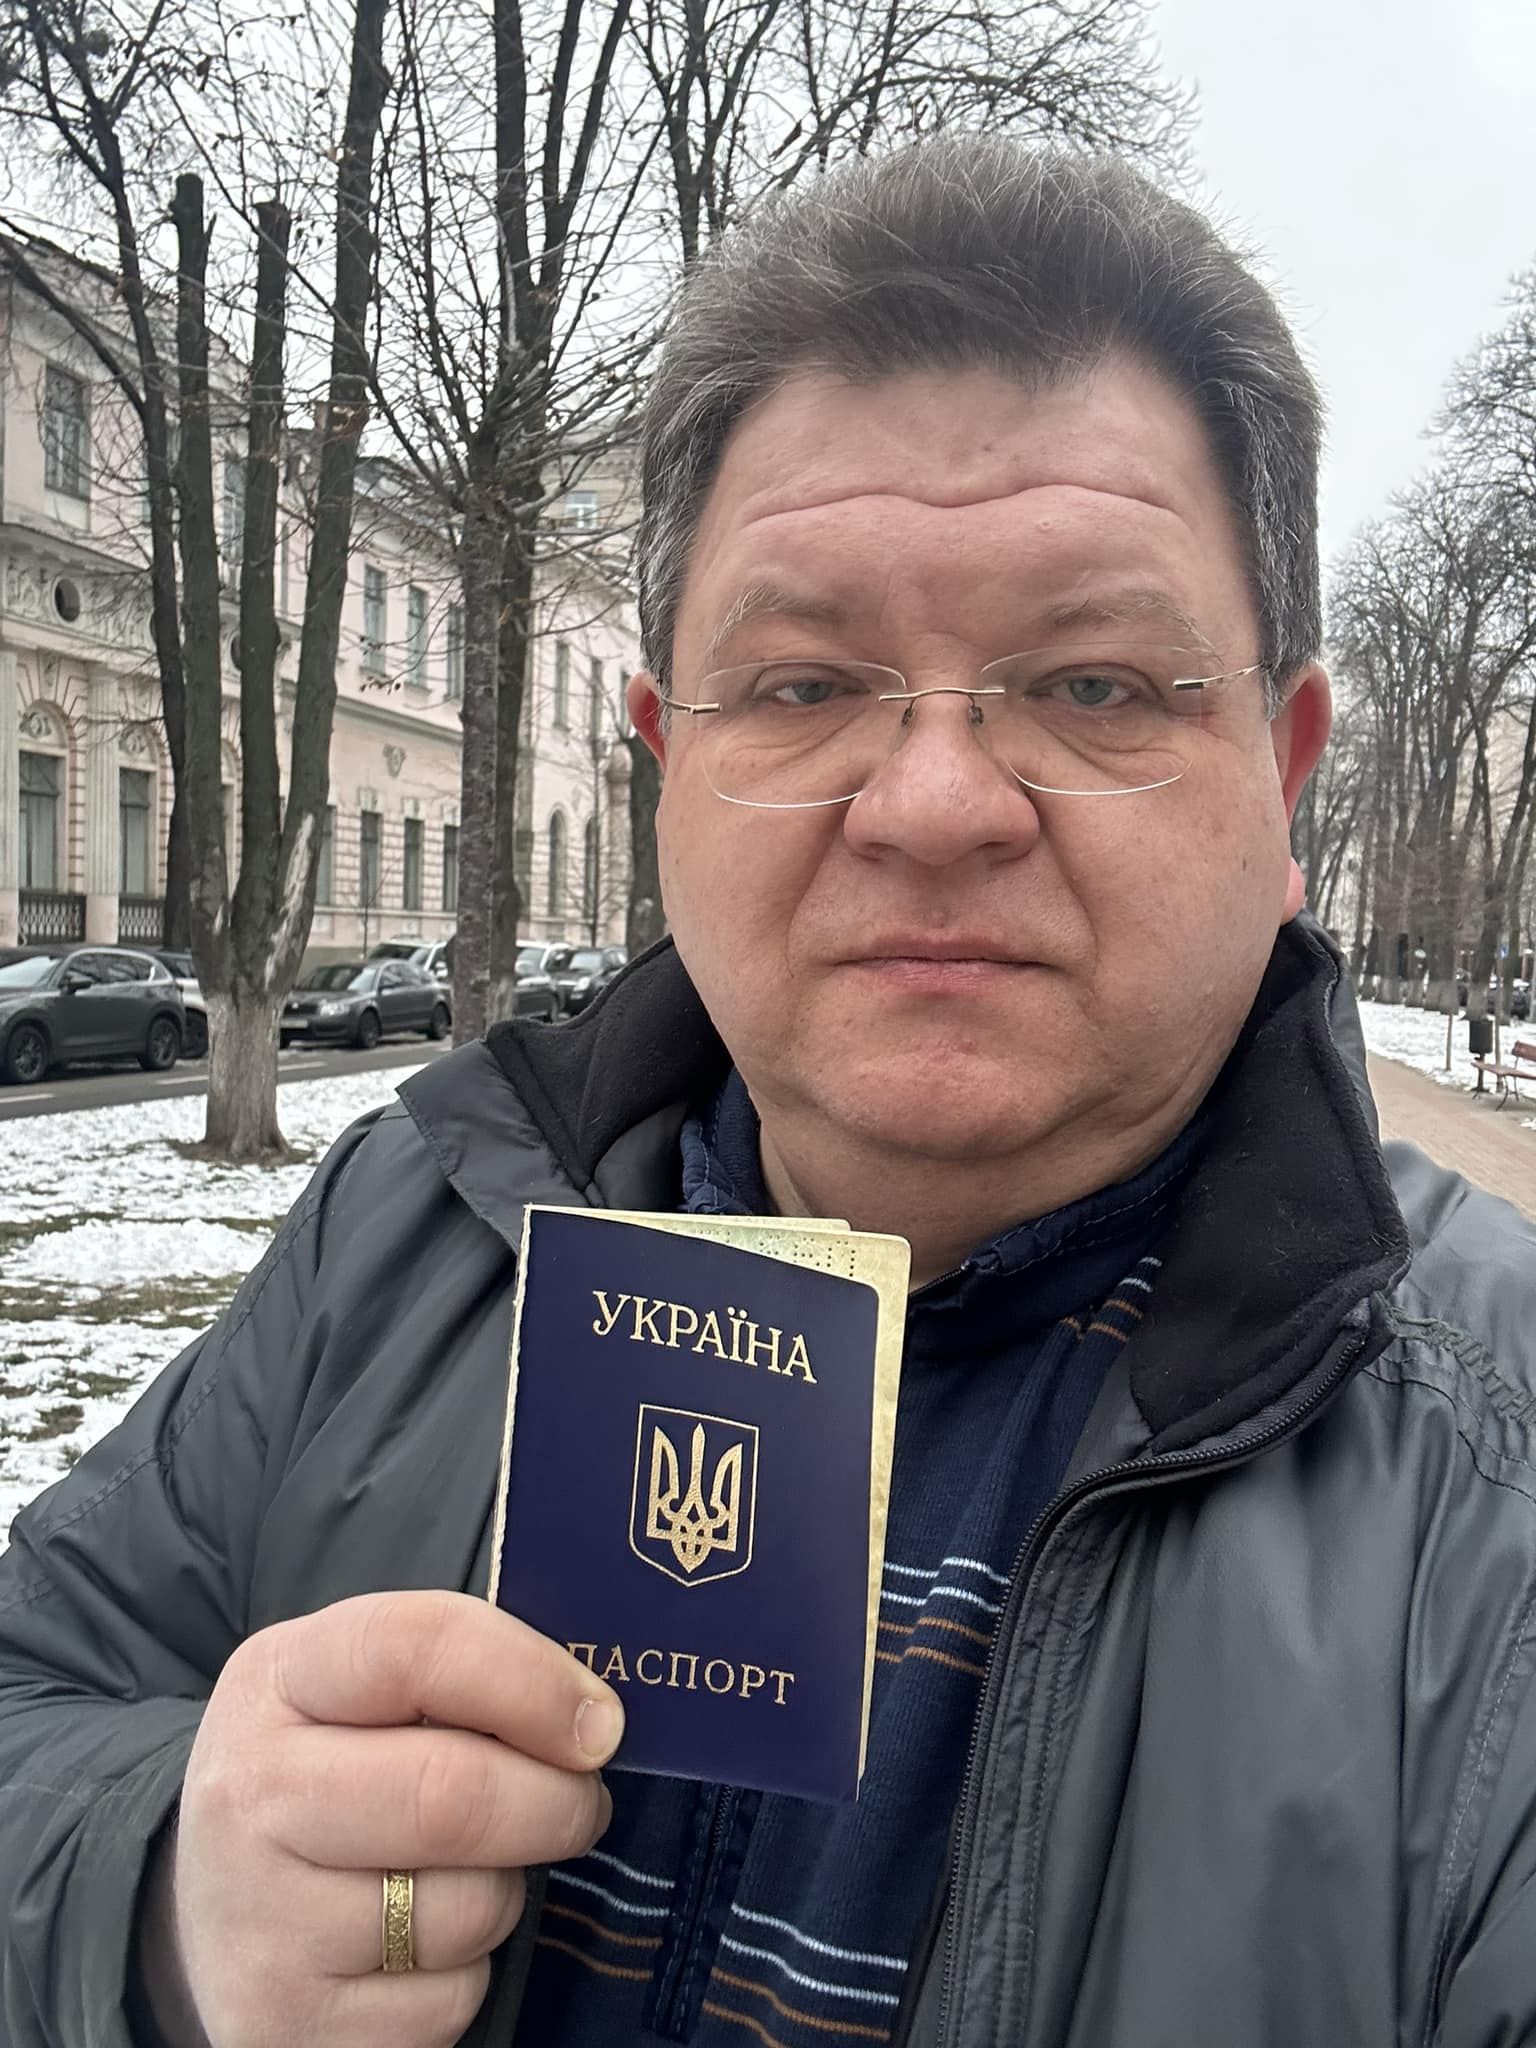 Бодан Львов зробив селфі з паспортом громадянина України навпроти суду.